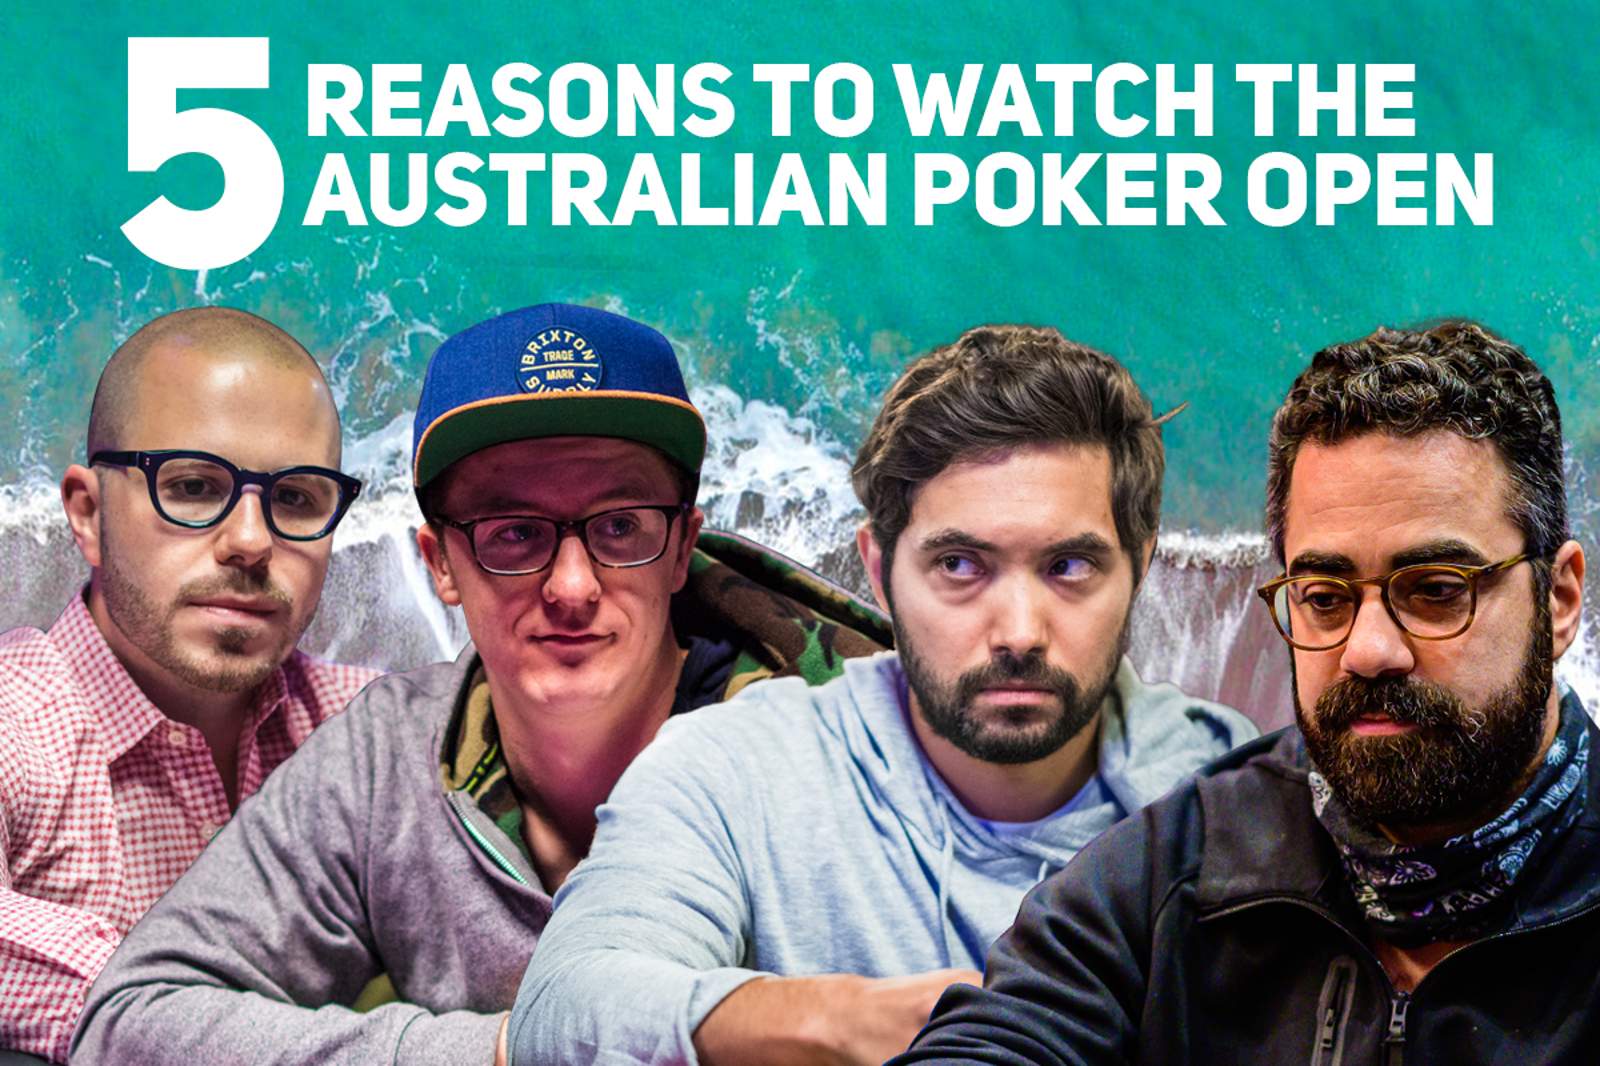 Five Reasons to Watch the Australian Poker Open